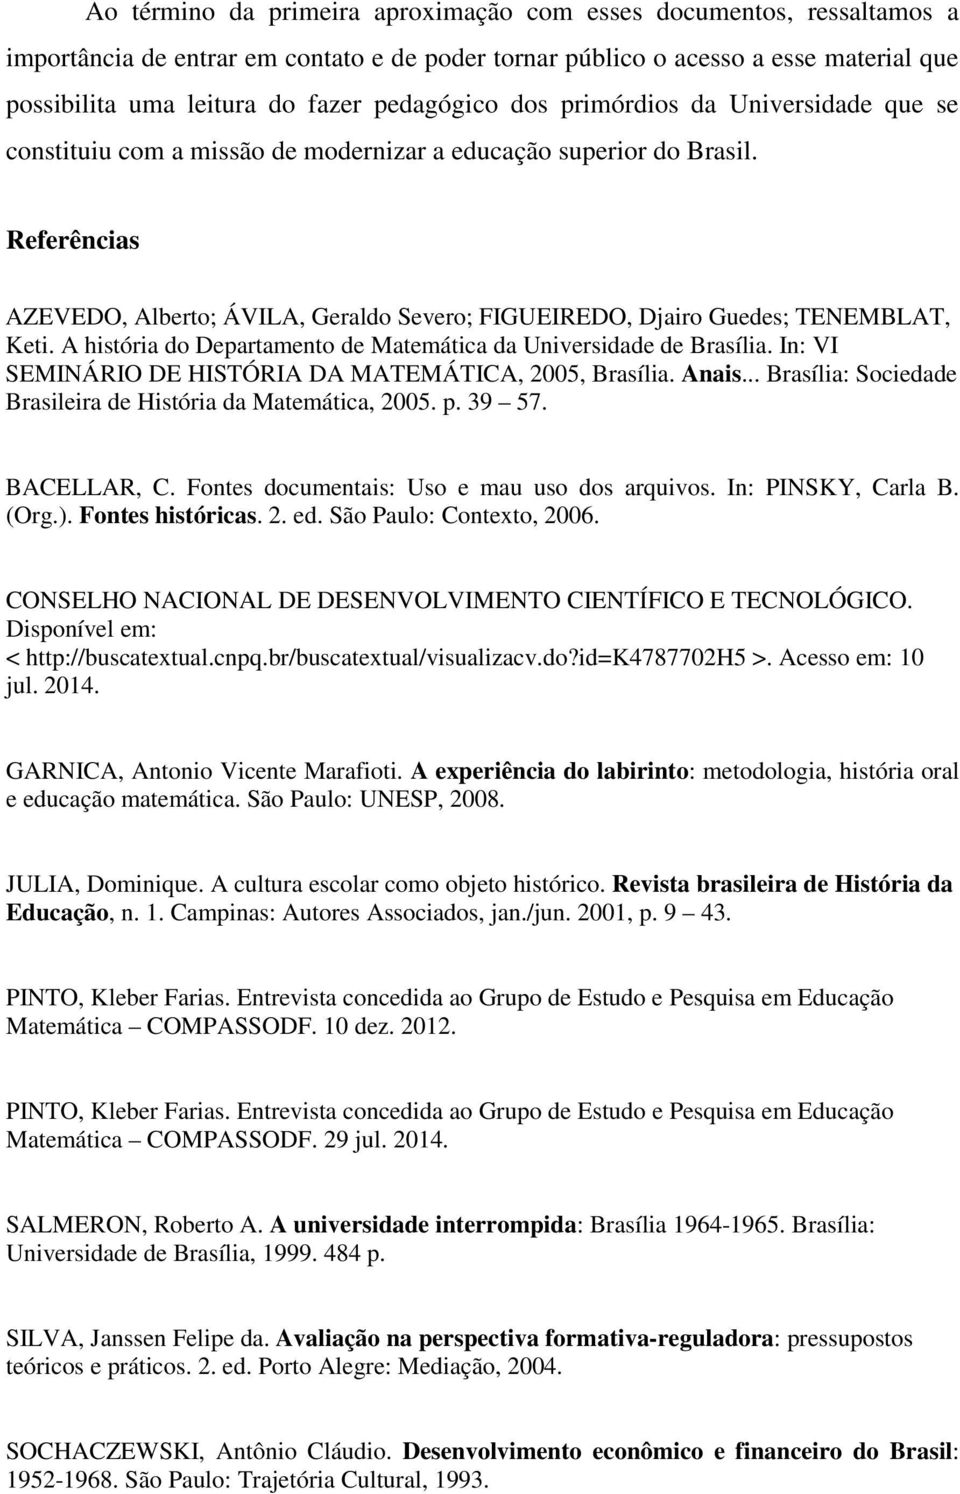 Referências AZEVEDO, Alberto; ÁVILA, Geraldo Severo; FIGUEIREDO, Djairo Guedes; TENEMBLAT, Keti. A história do Departamento de Matemática da Universidade de Brasília.